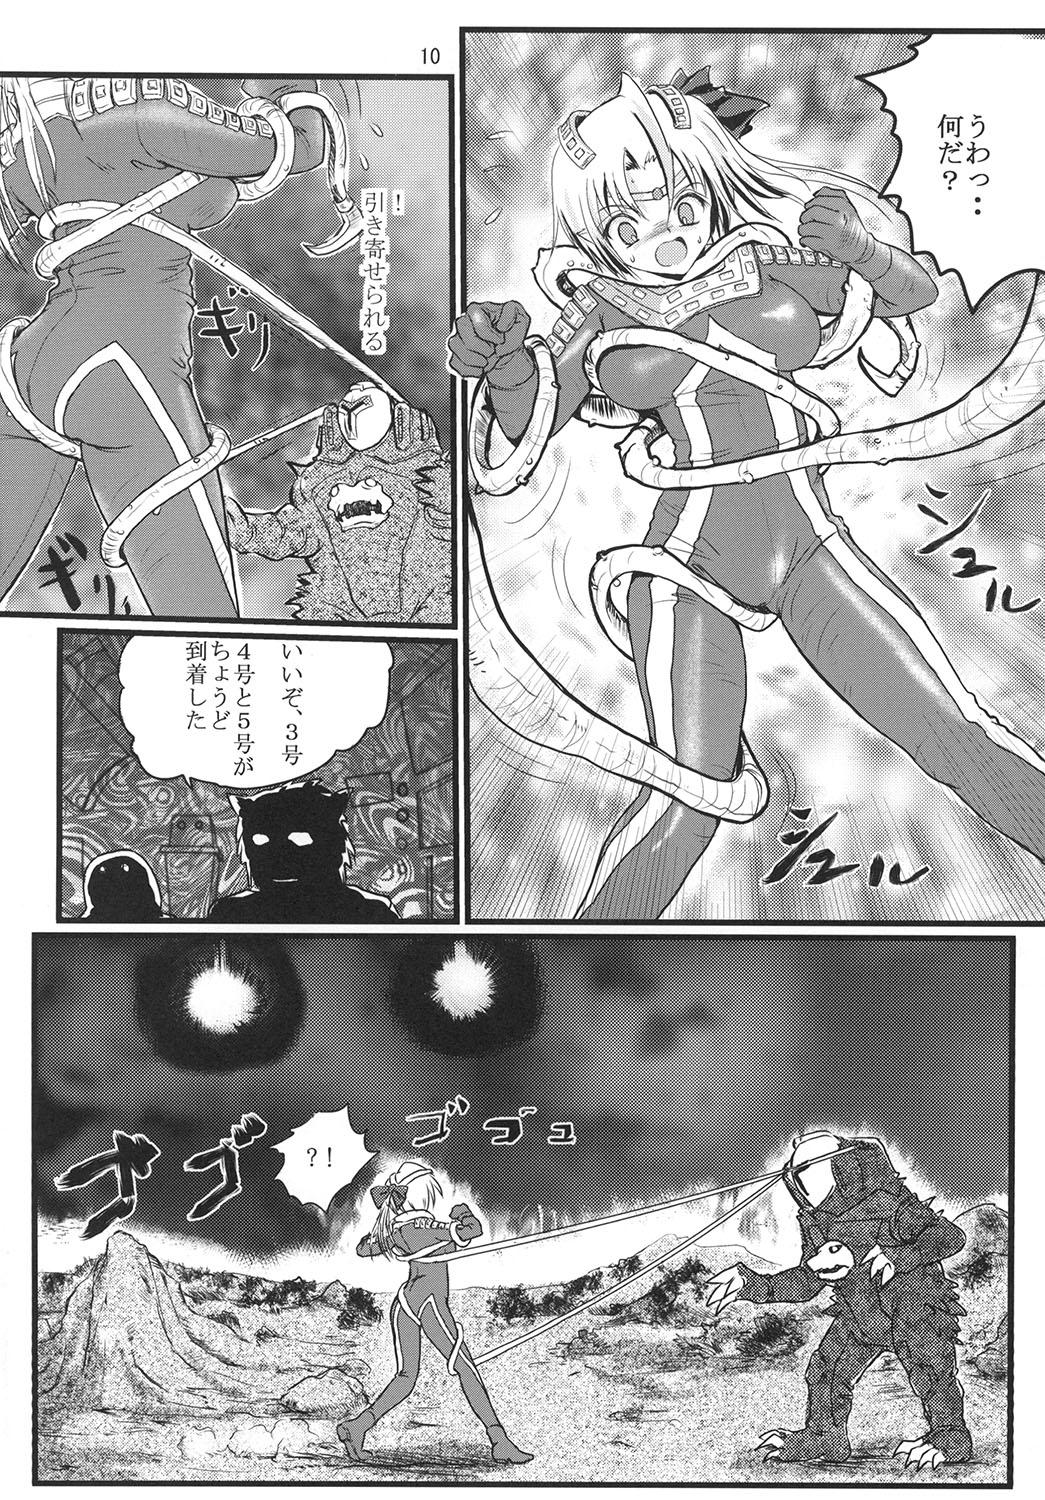 Pau Ultra Nanako Zettaizetsumei! - Ultraman Ex Gf - Page 10